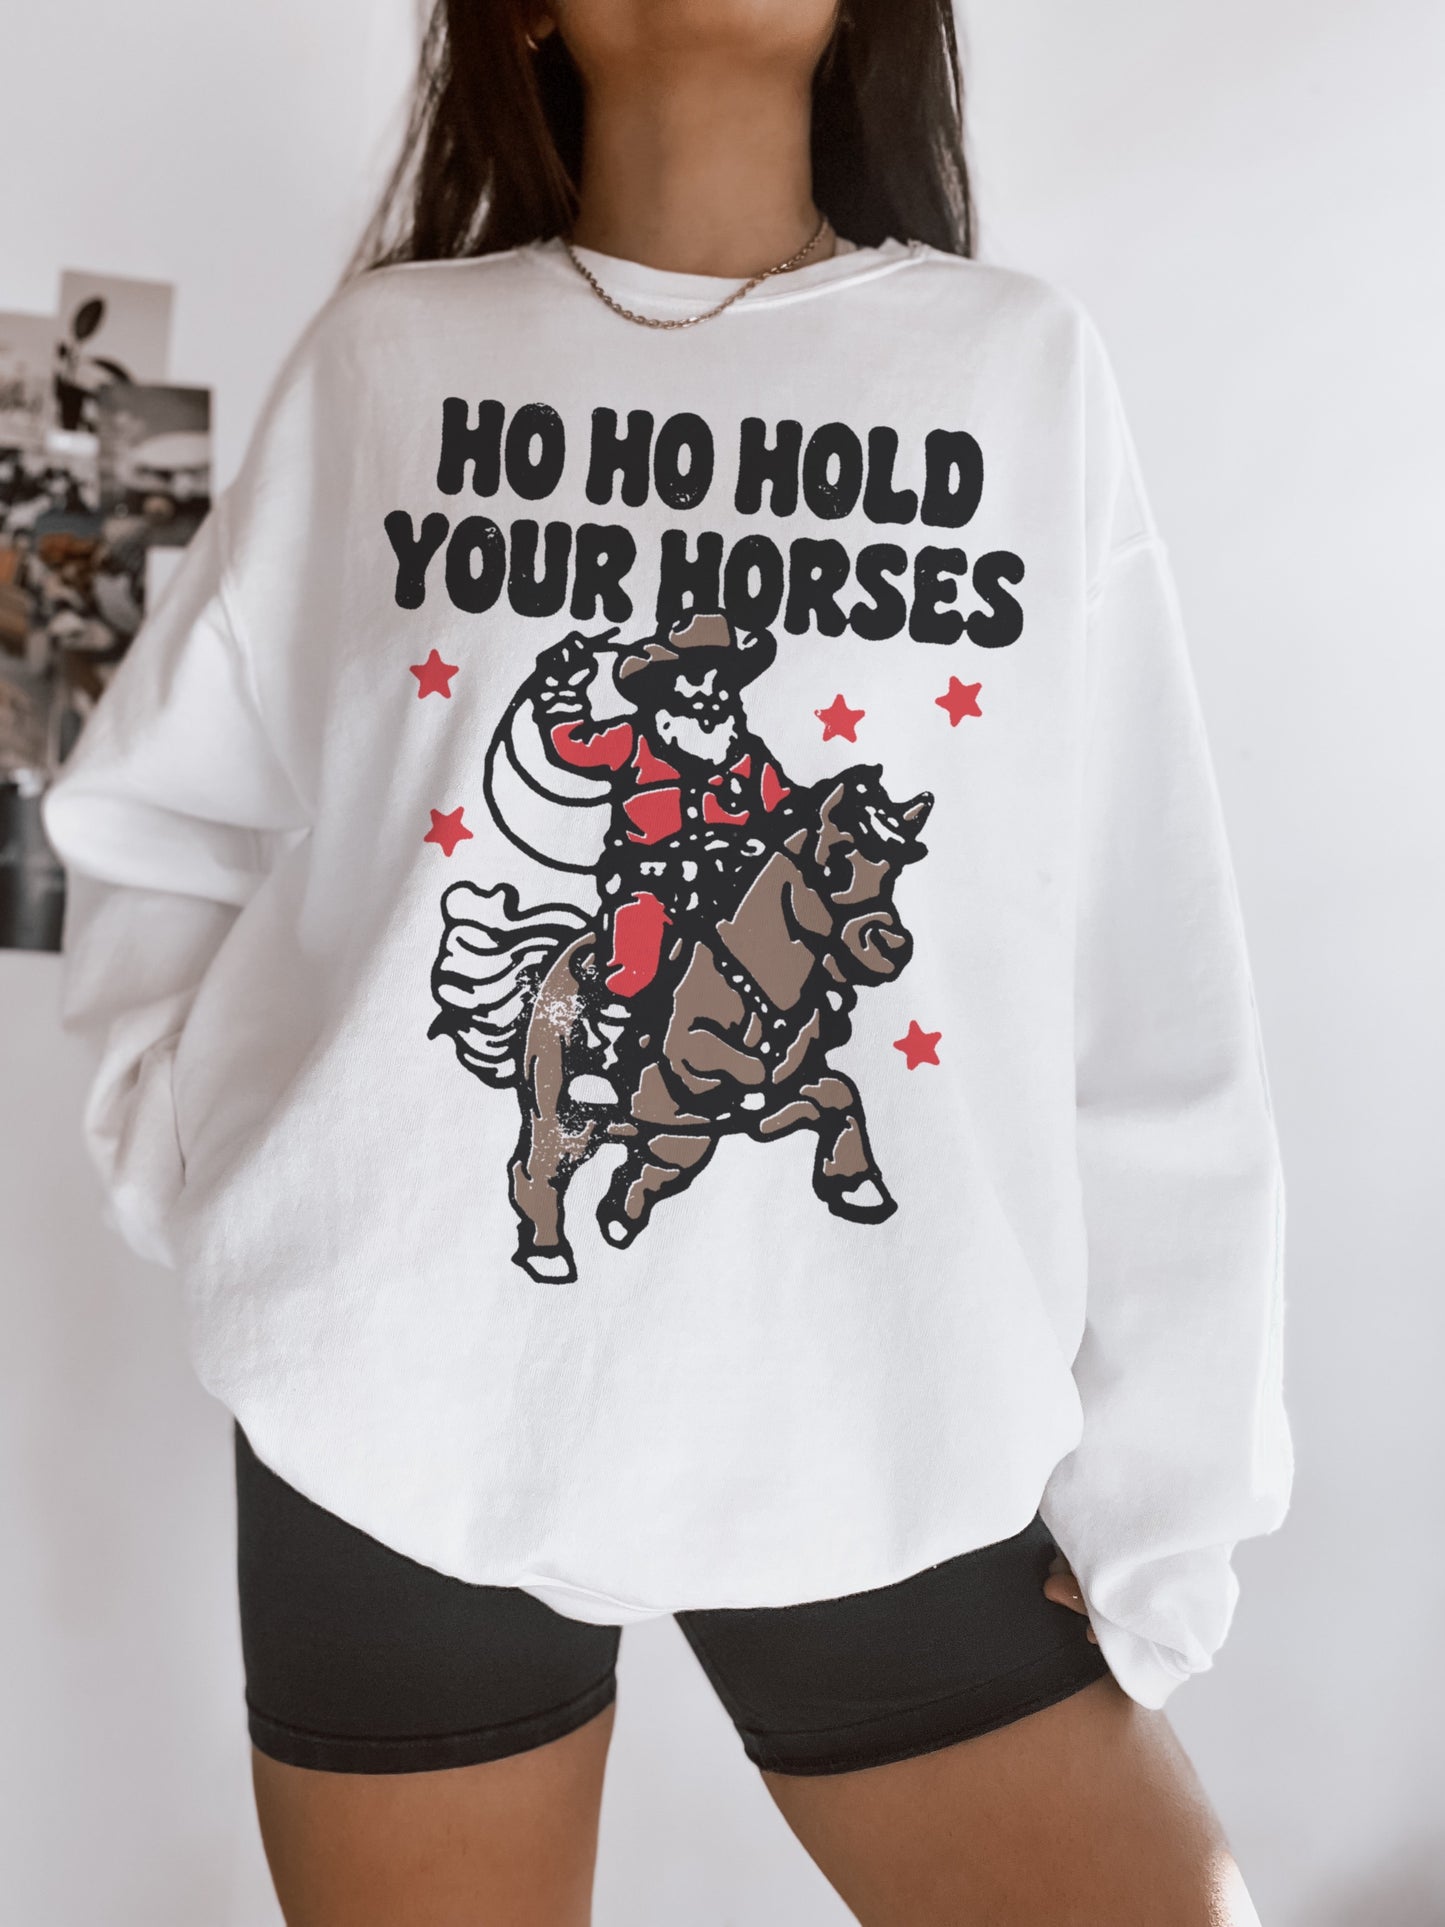 Ho Ho Hold Your Horses Crew